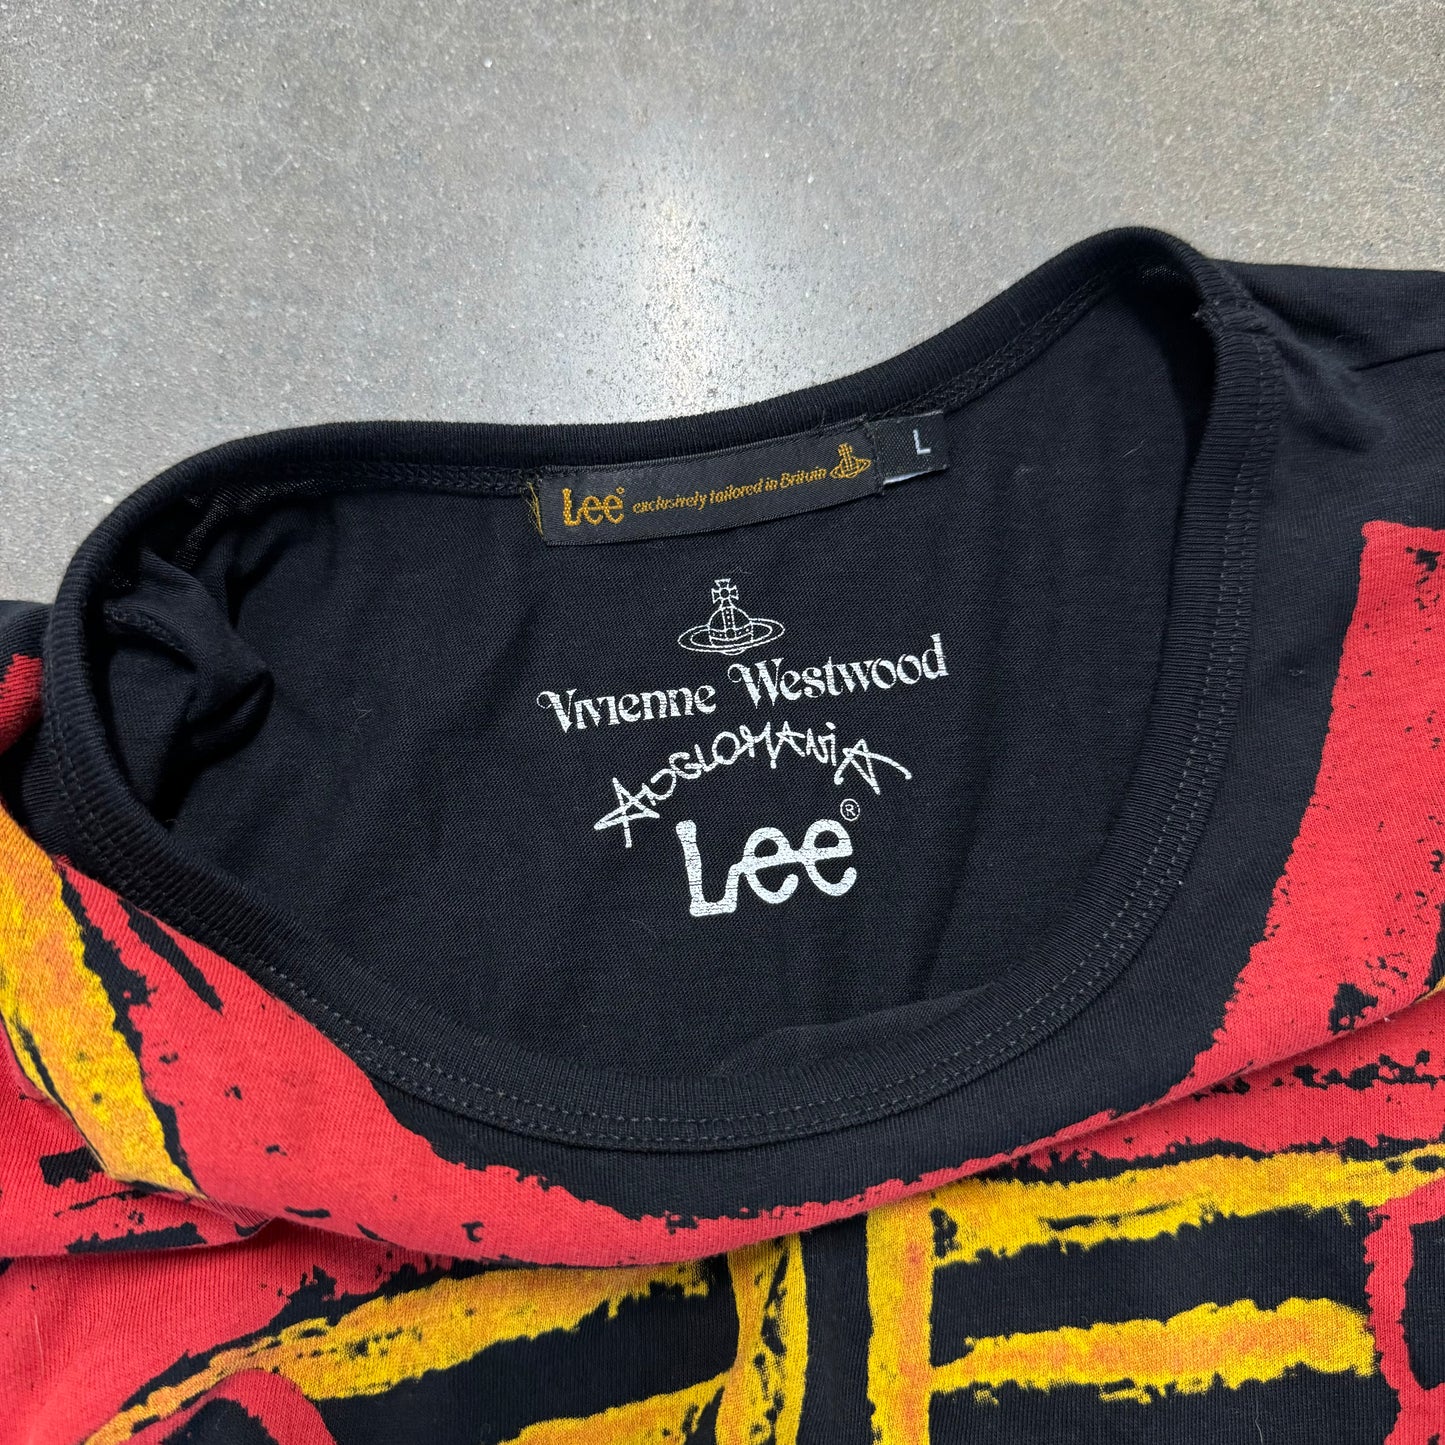 Vivienne Westwood x Lee T-Shirt [L]